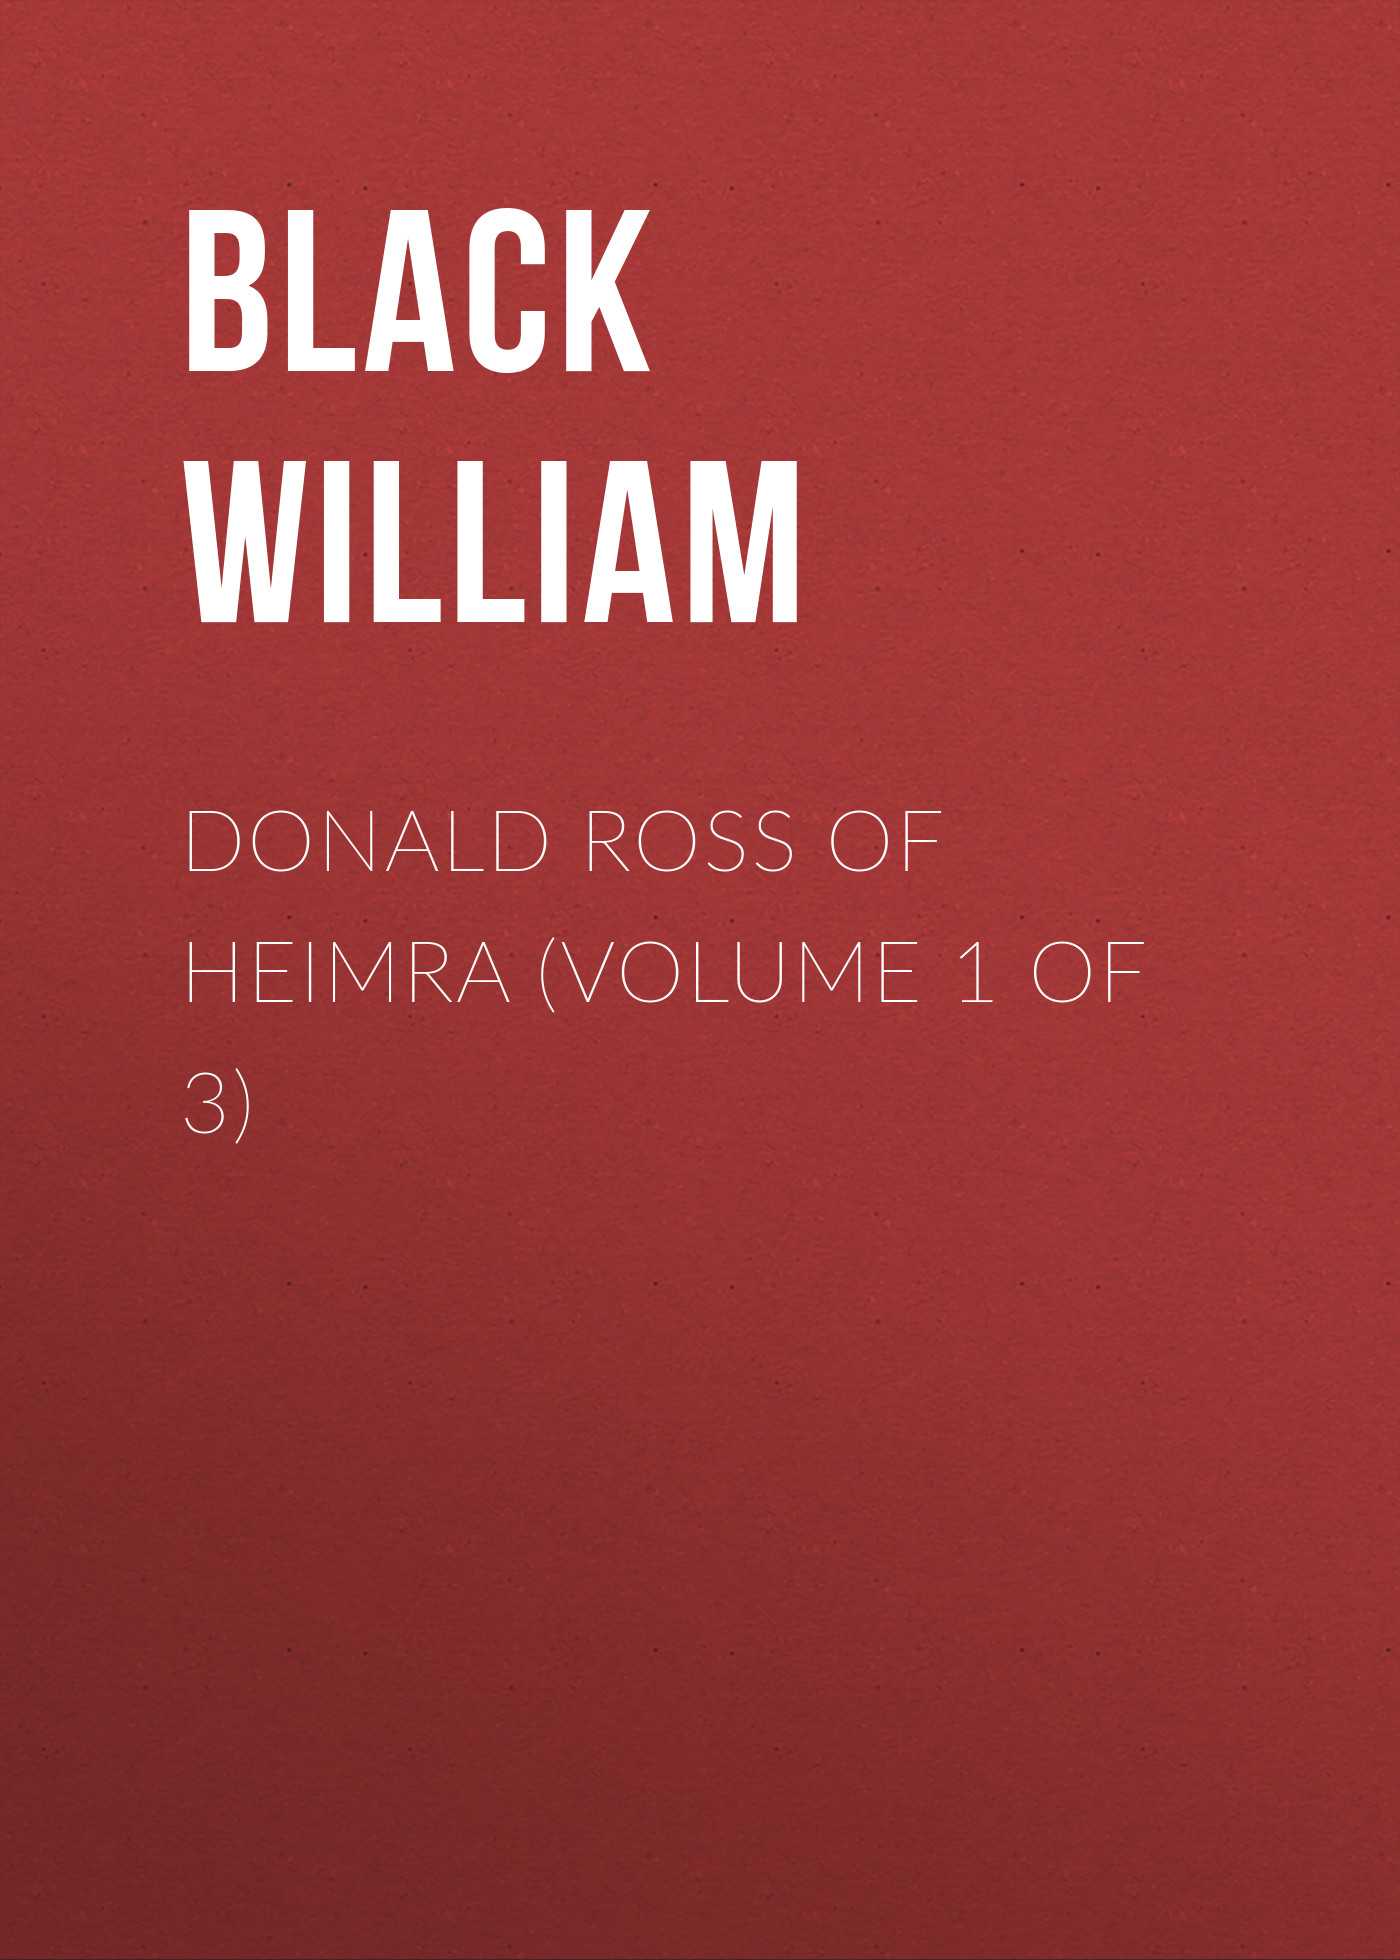 Книга Donald Ross of Heimra (Volume 1 of 3) из серии , созданная William Black, может относится к жанру Зарубежная старинная литература, Зарубежная классика. Стоимость электронной книги Donald Ross of Heimra (Volume 1 of 3) с идентификатором 24168868 составляет 0.90 руб.